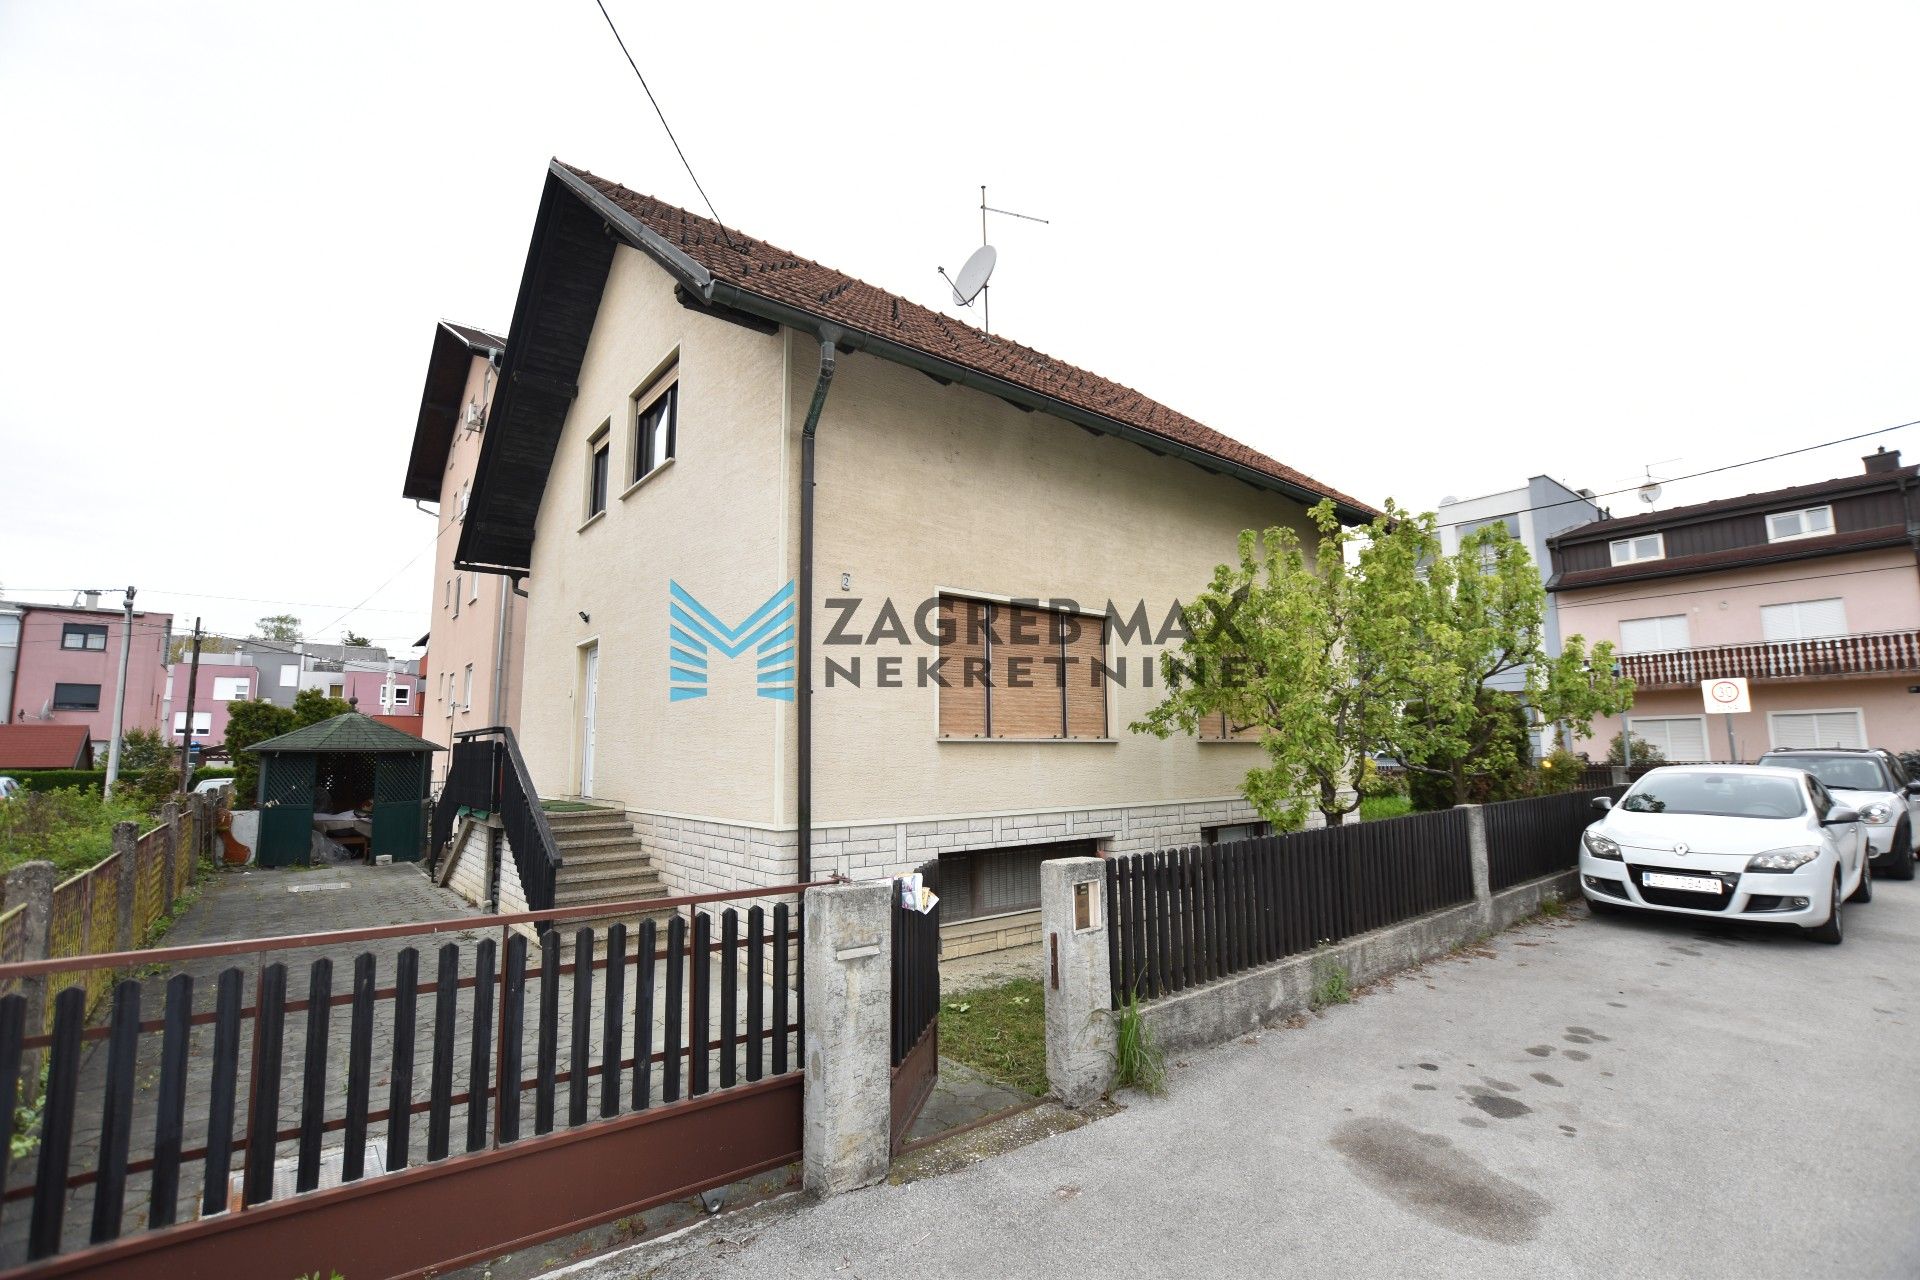 Zagreb - NAJAM - KUSTOŠIJA Obiteljska kuća 180 m2, 2 odvojena stana i podrum, parking, BEZ PROVIZIJE